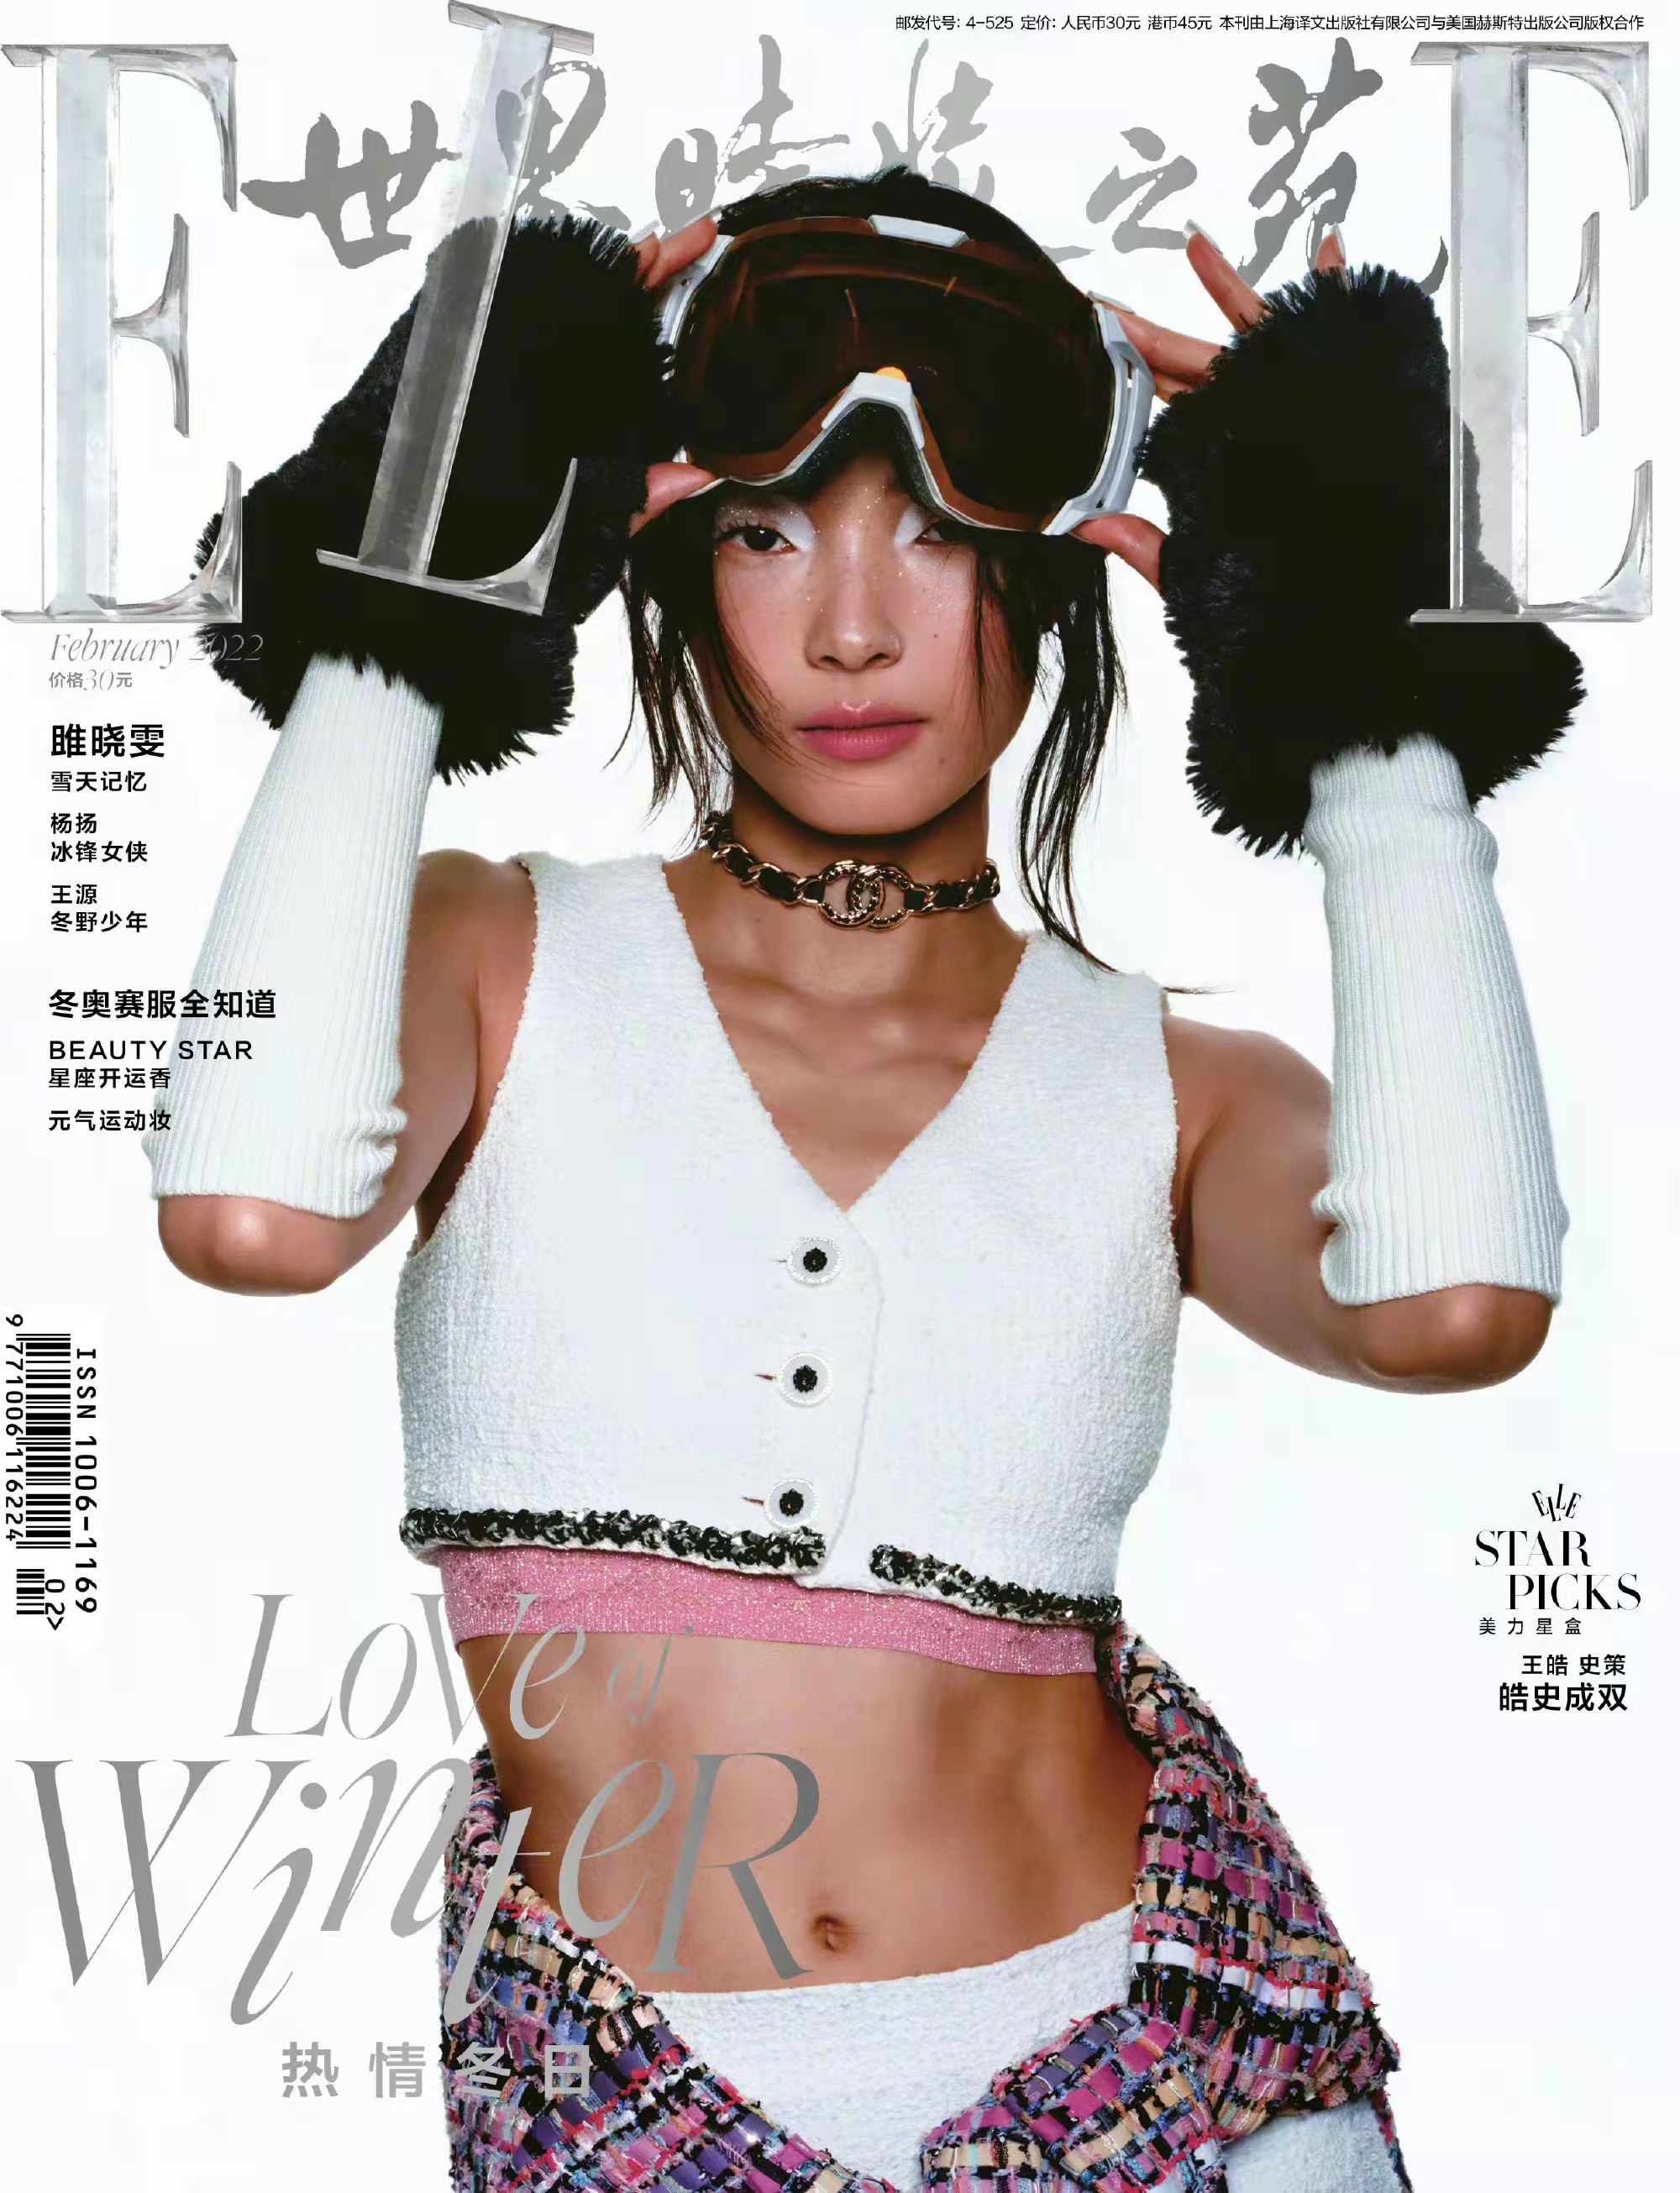 《ELLE世界时装之苑》2月刊的模特拍摄封面